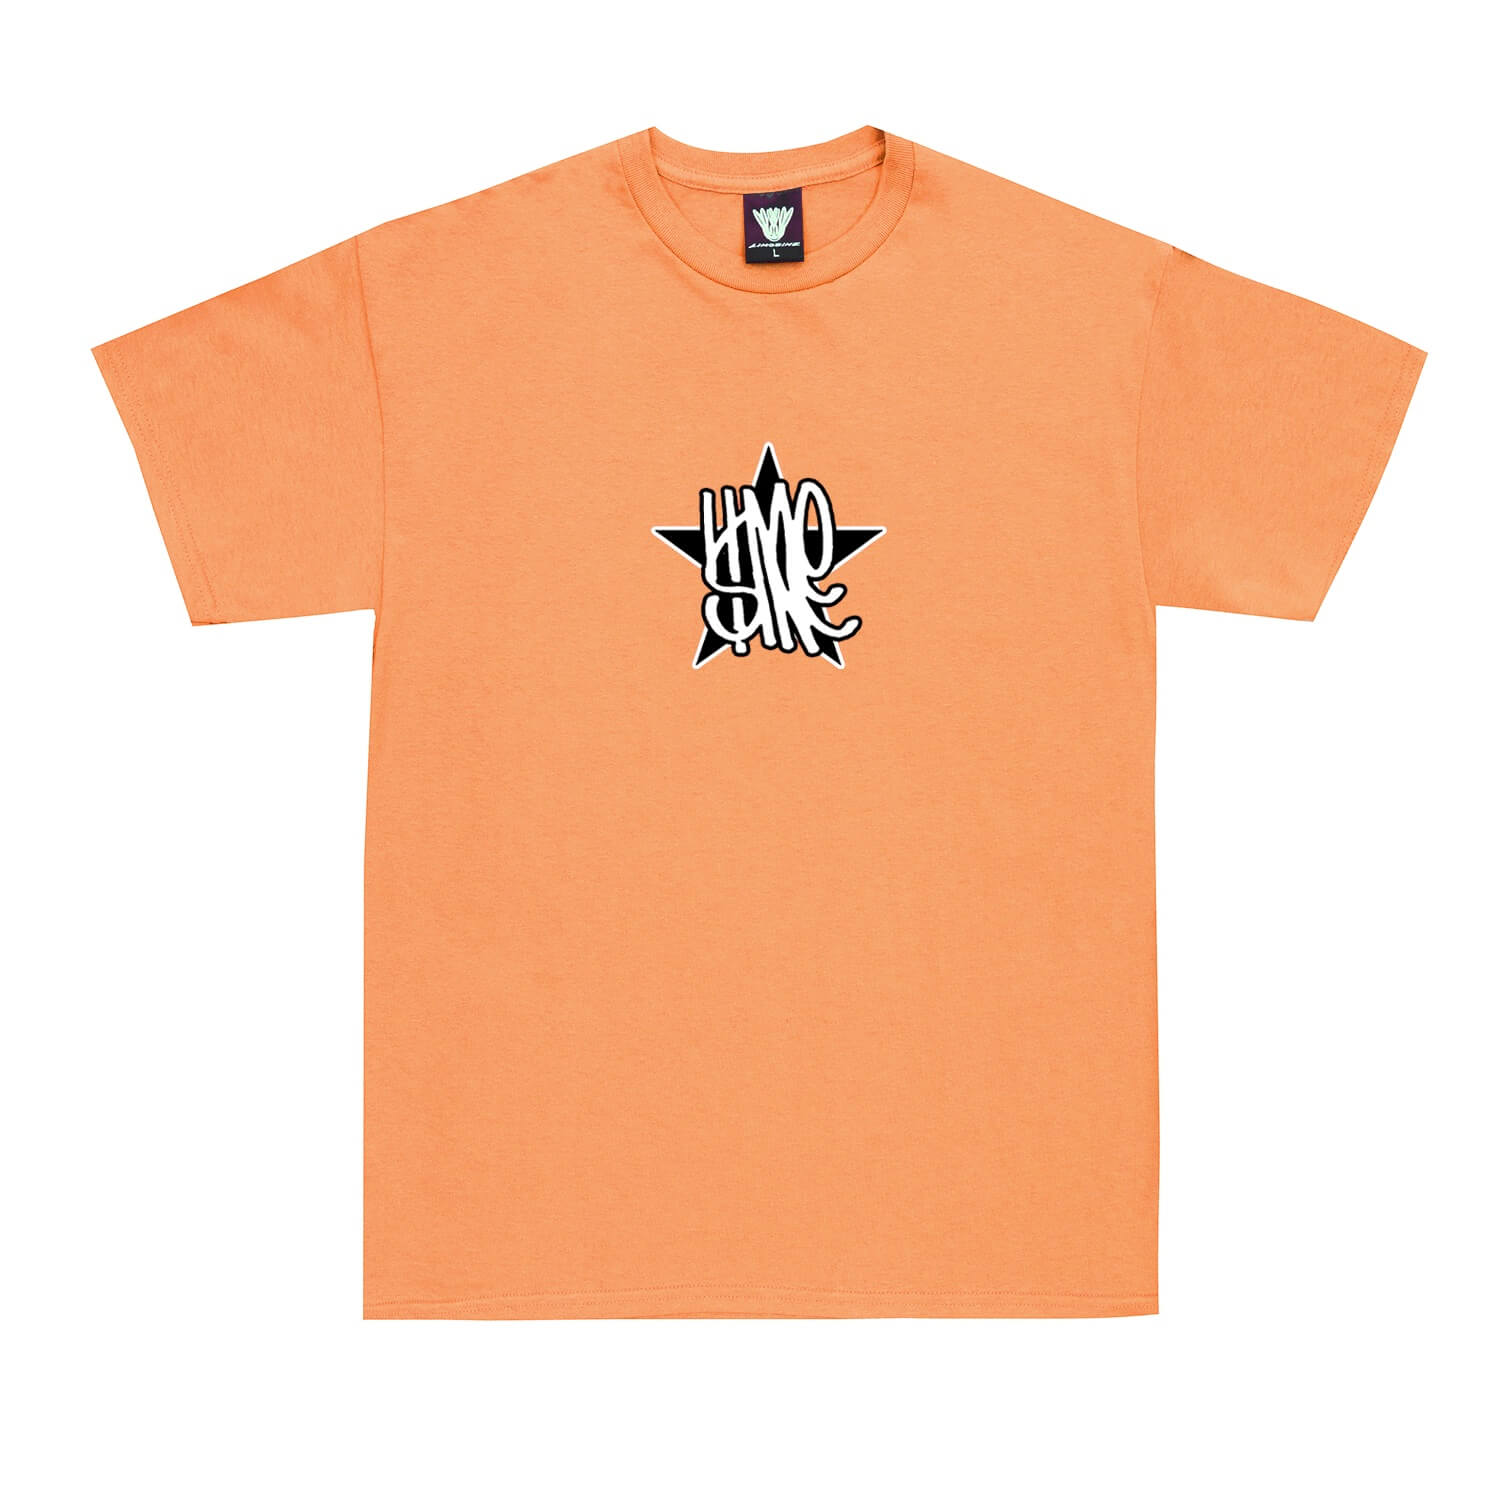 Limosine Star Short Sleeve T-Shirt (Orange Coral) - Apple Valley Emporium